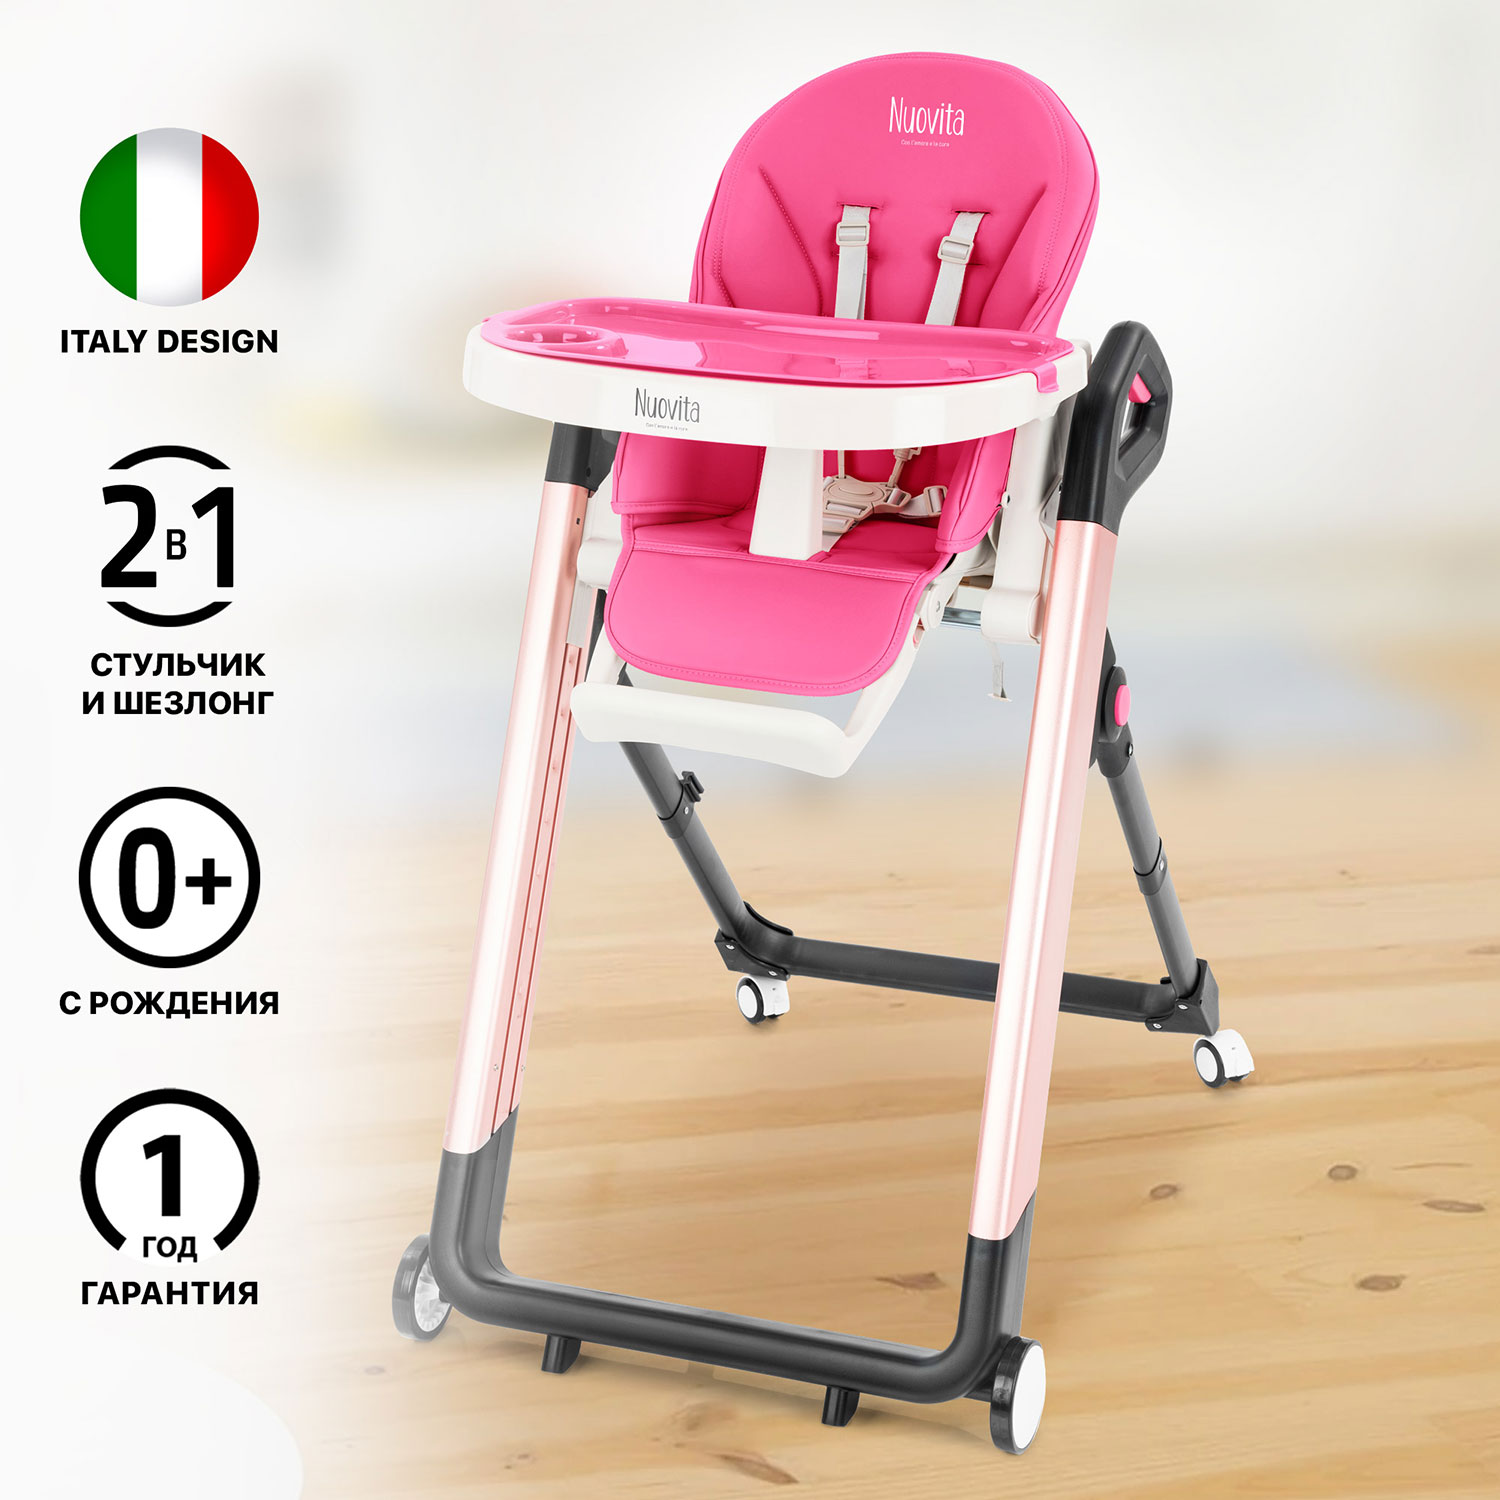 Стульчик для кормления Nuovita Orbita (Cremisi, Rosa/Малиновый, Розовый) стульчик для кормления nuovita grande cremisi малиновый